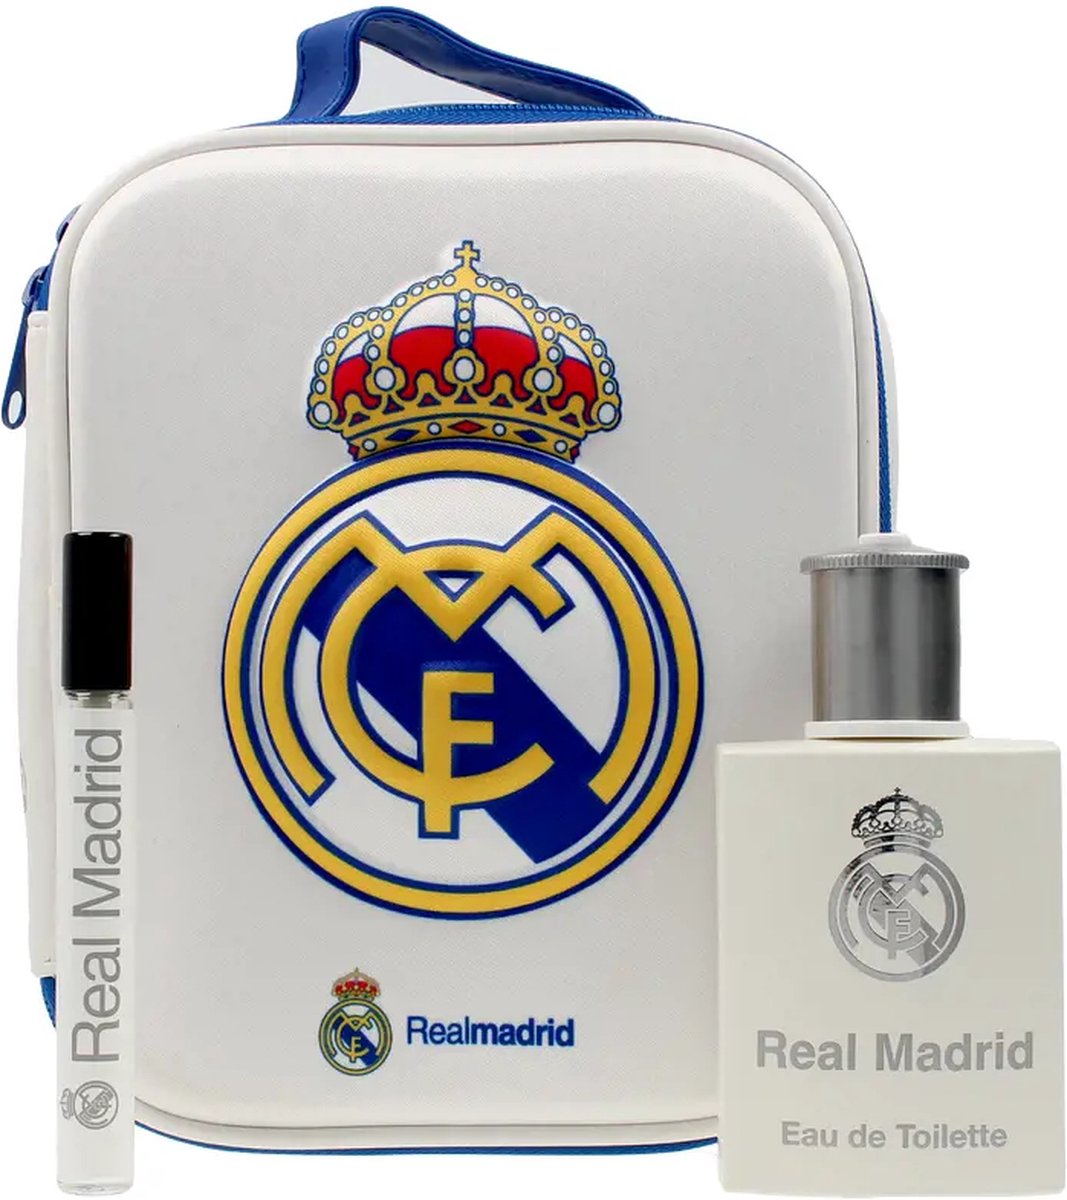 Real Madrid Eau de Toilette